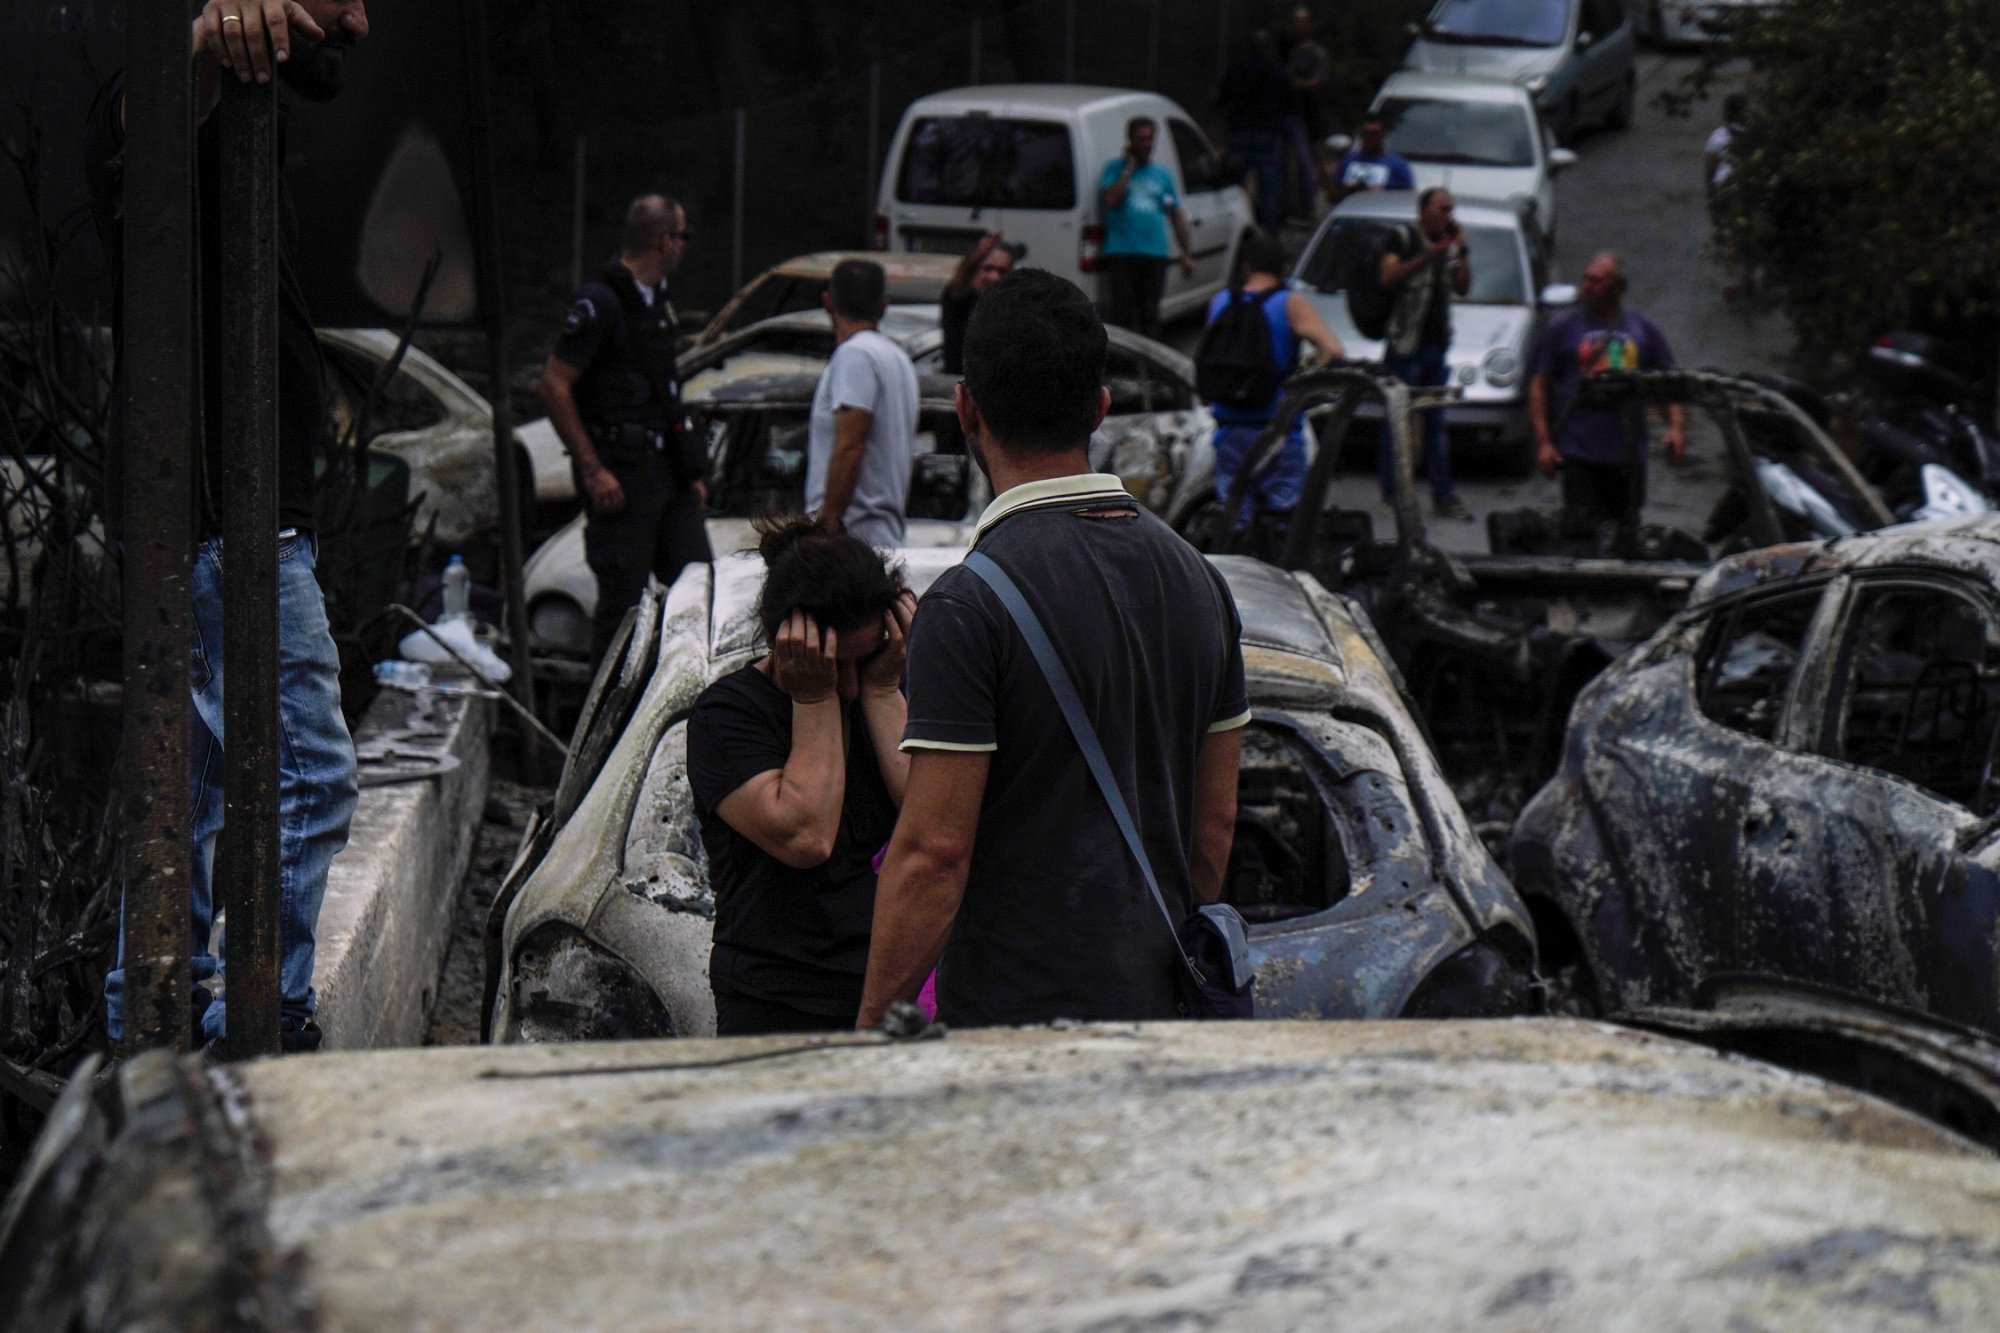 Φάμελλος: Κανείς στον ΣΥΡΙΖΑ δεν κρύφτηκε πίσω από ασυλία - Προσπάθησαν να εκμεταλλευτούν το Μάτι